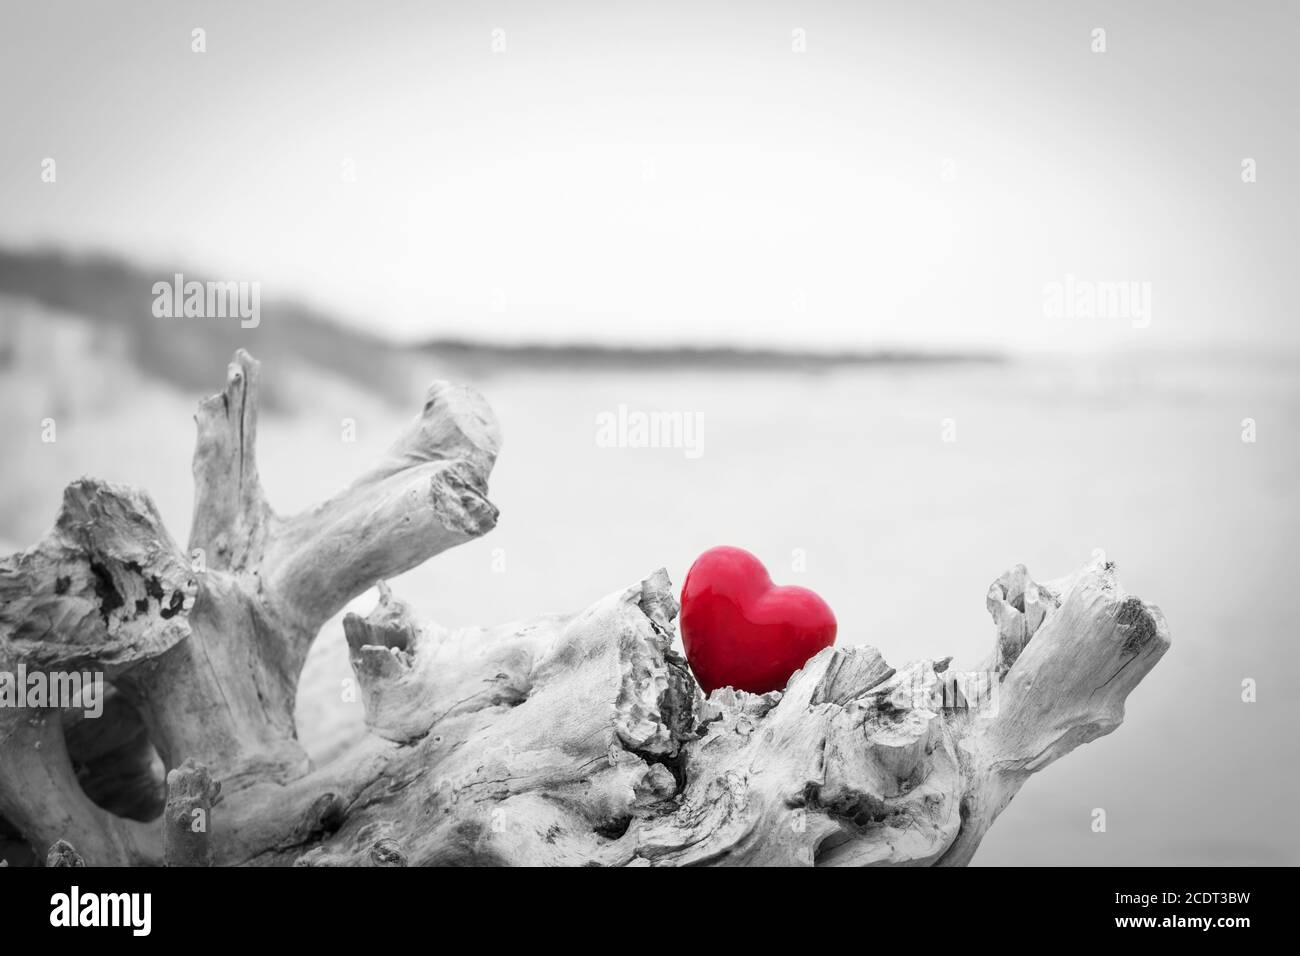 Cuore rosso in un tronco d'albero sulla spiaggia. Simbolo d'amore. Rosso contro nero e bianco Foto Stock